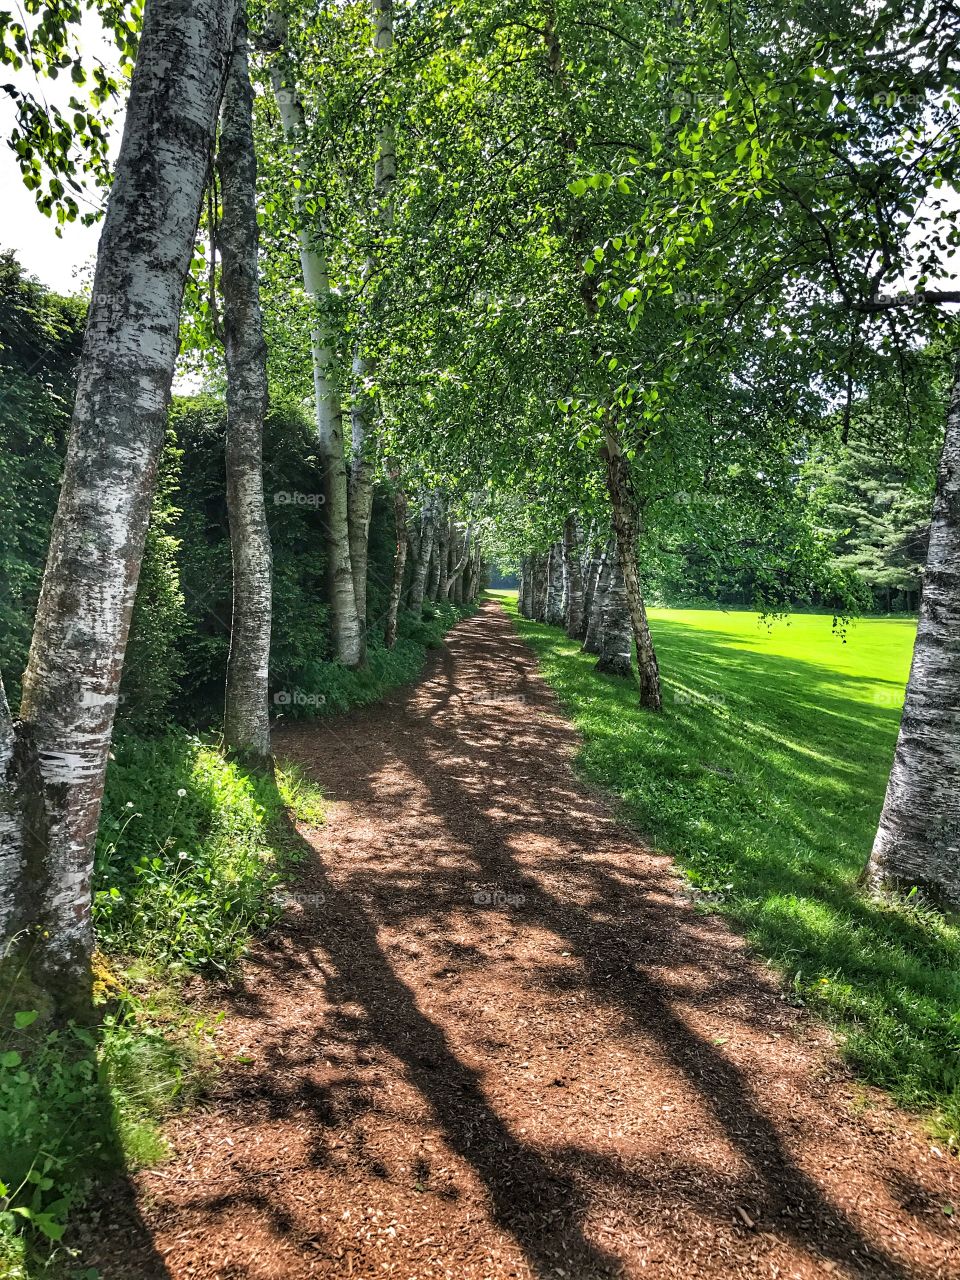 Hidden path among a green field